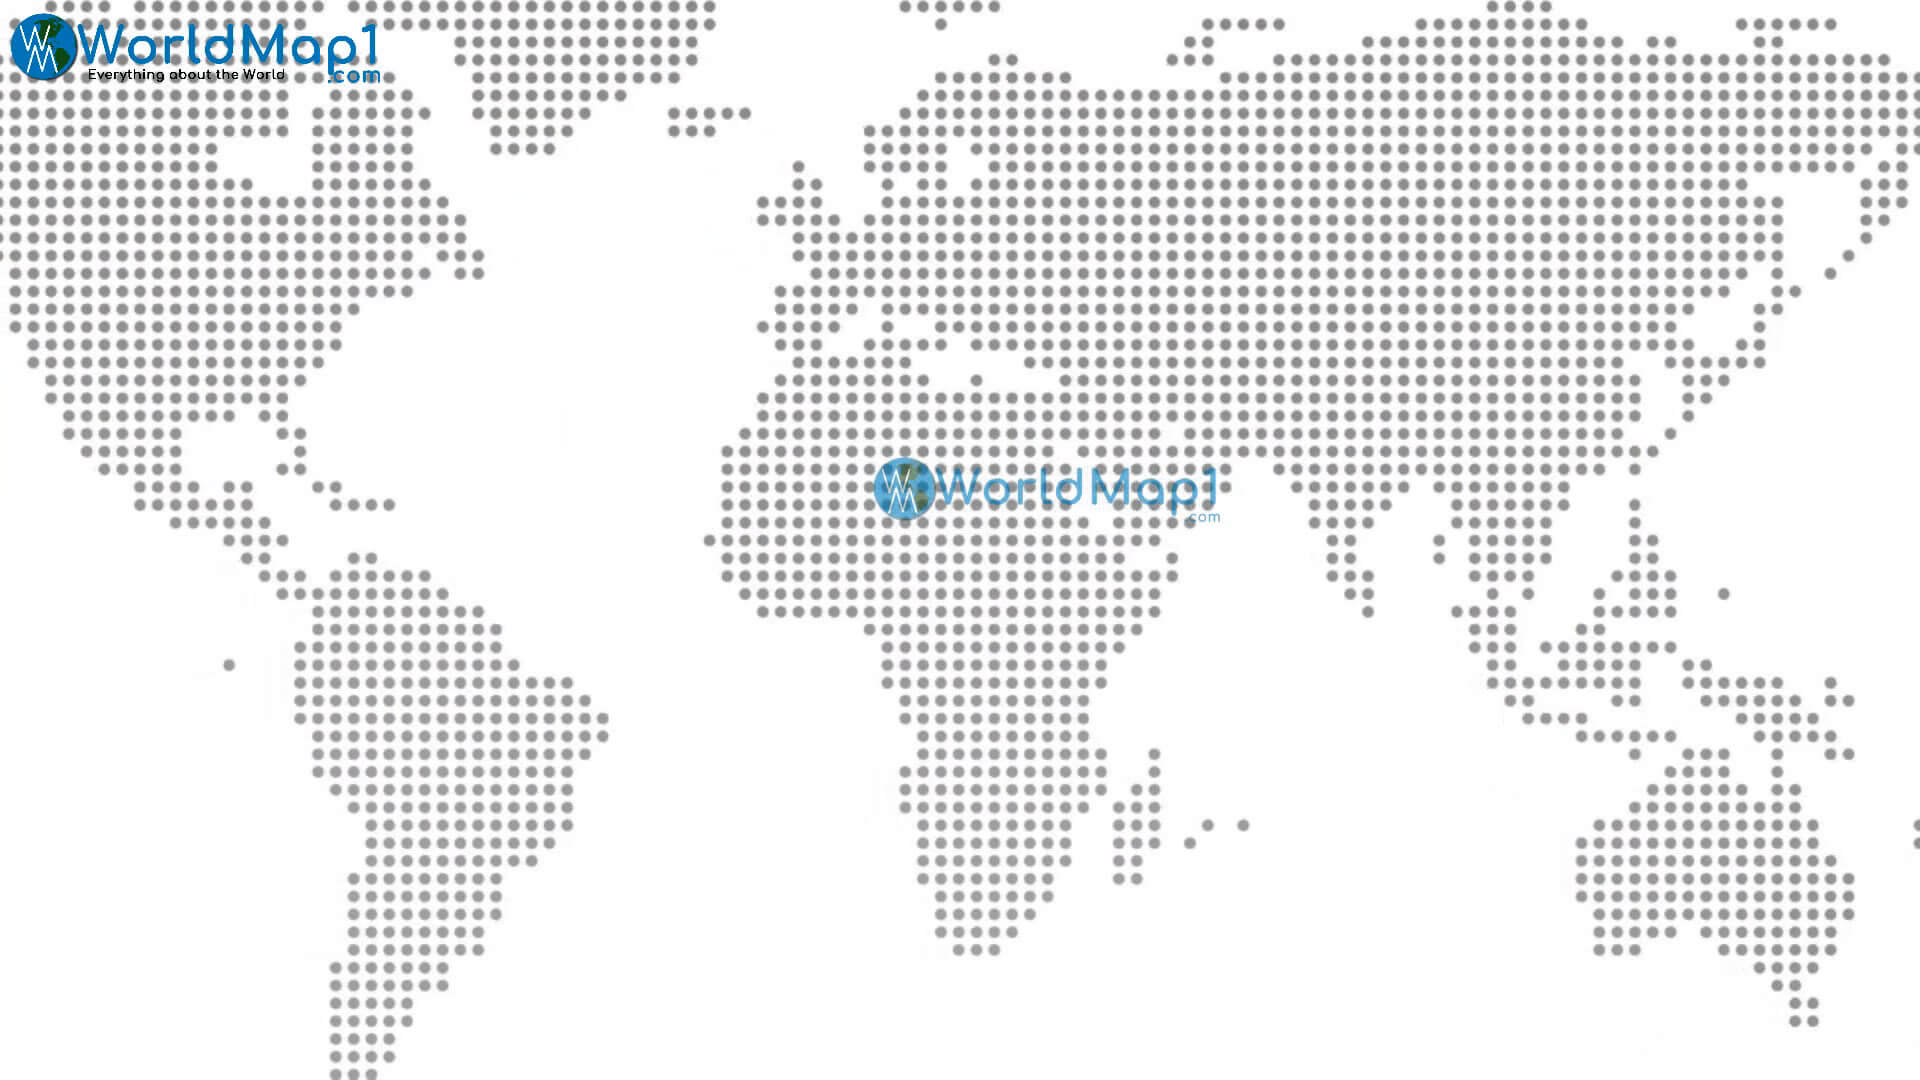 Dünya Ülkeleri Noktalı Harita